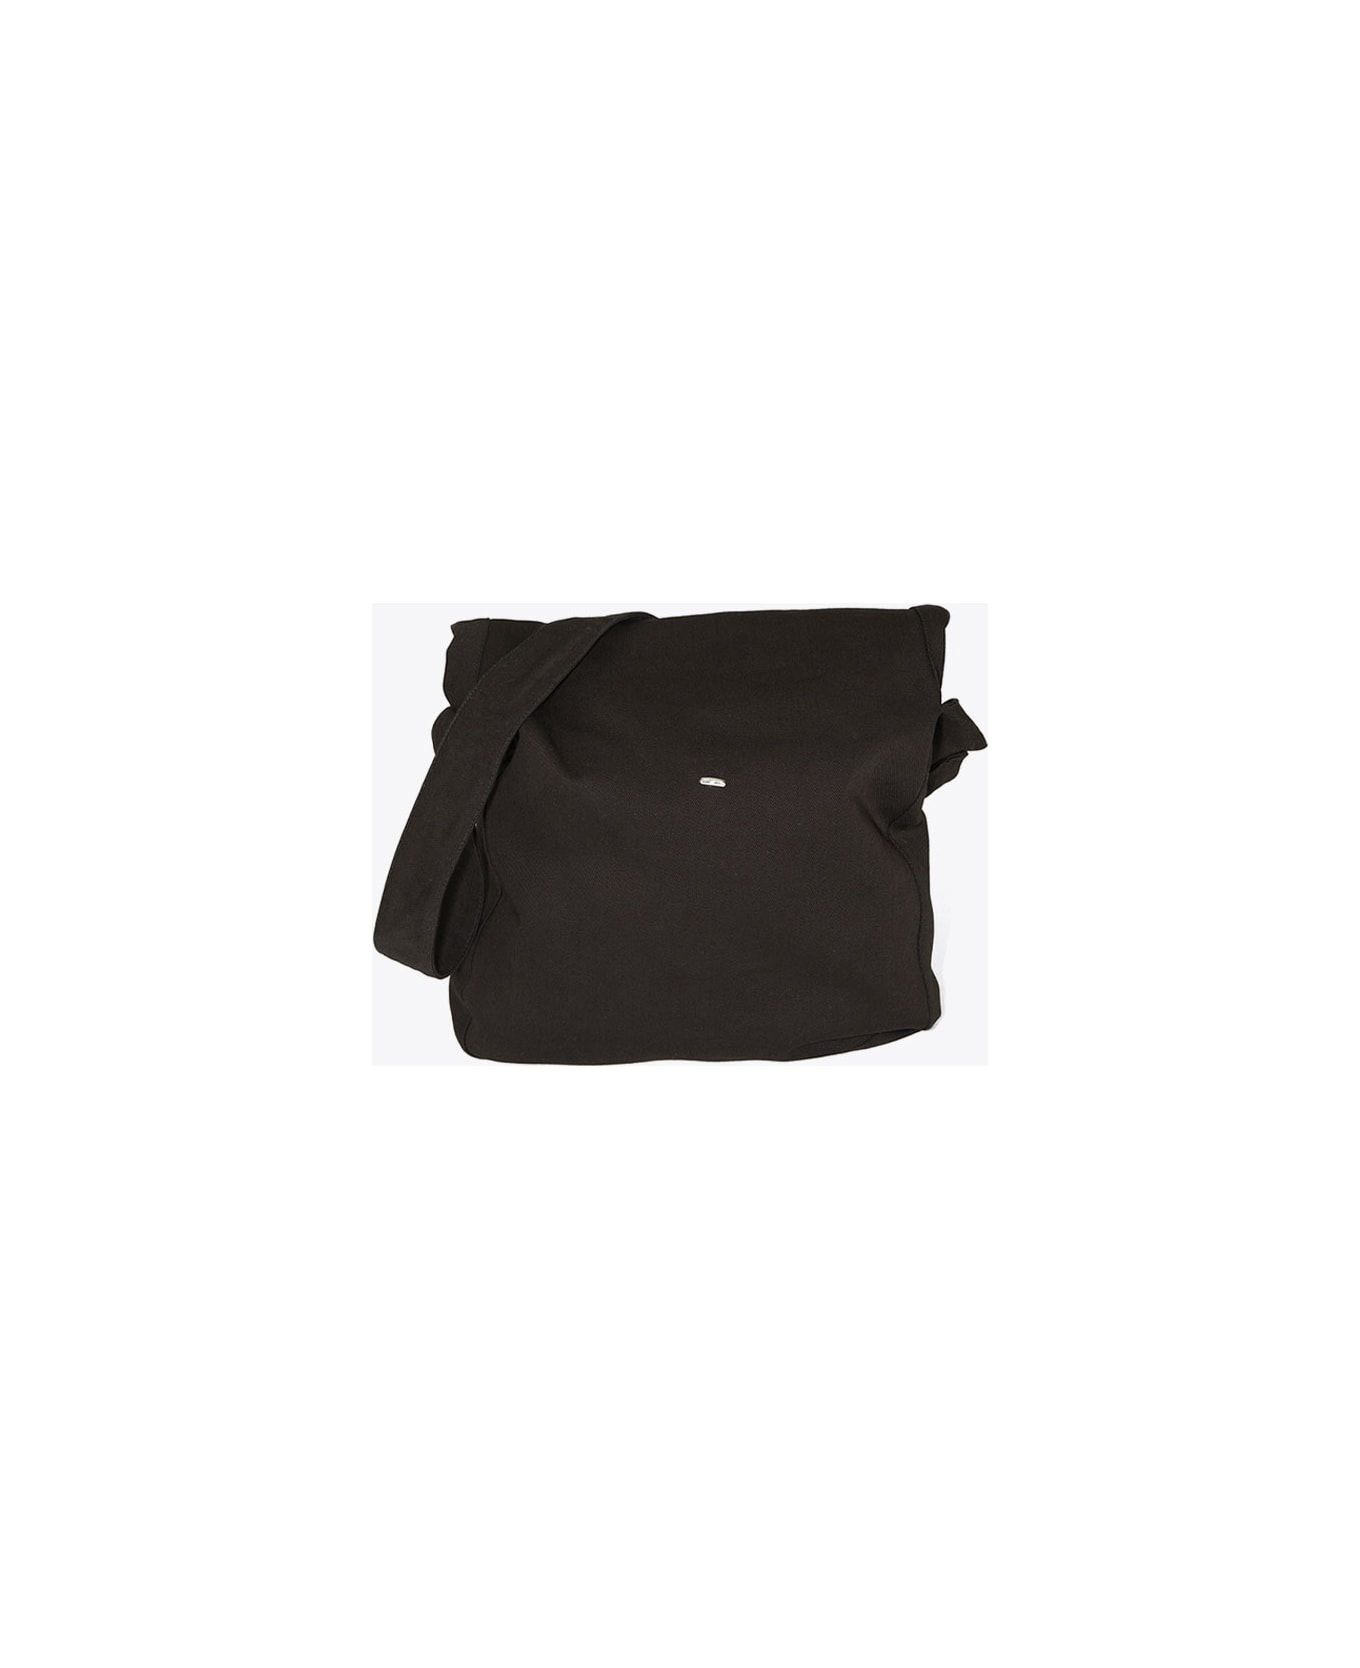 Our Legacy Sling Bag Black canvas bag with shoulder strap - Sling bag - Denim nero バッグ